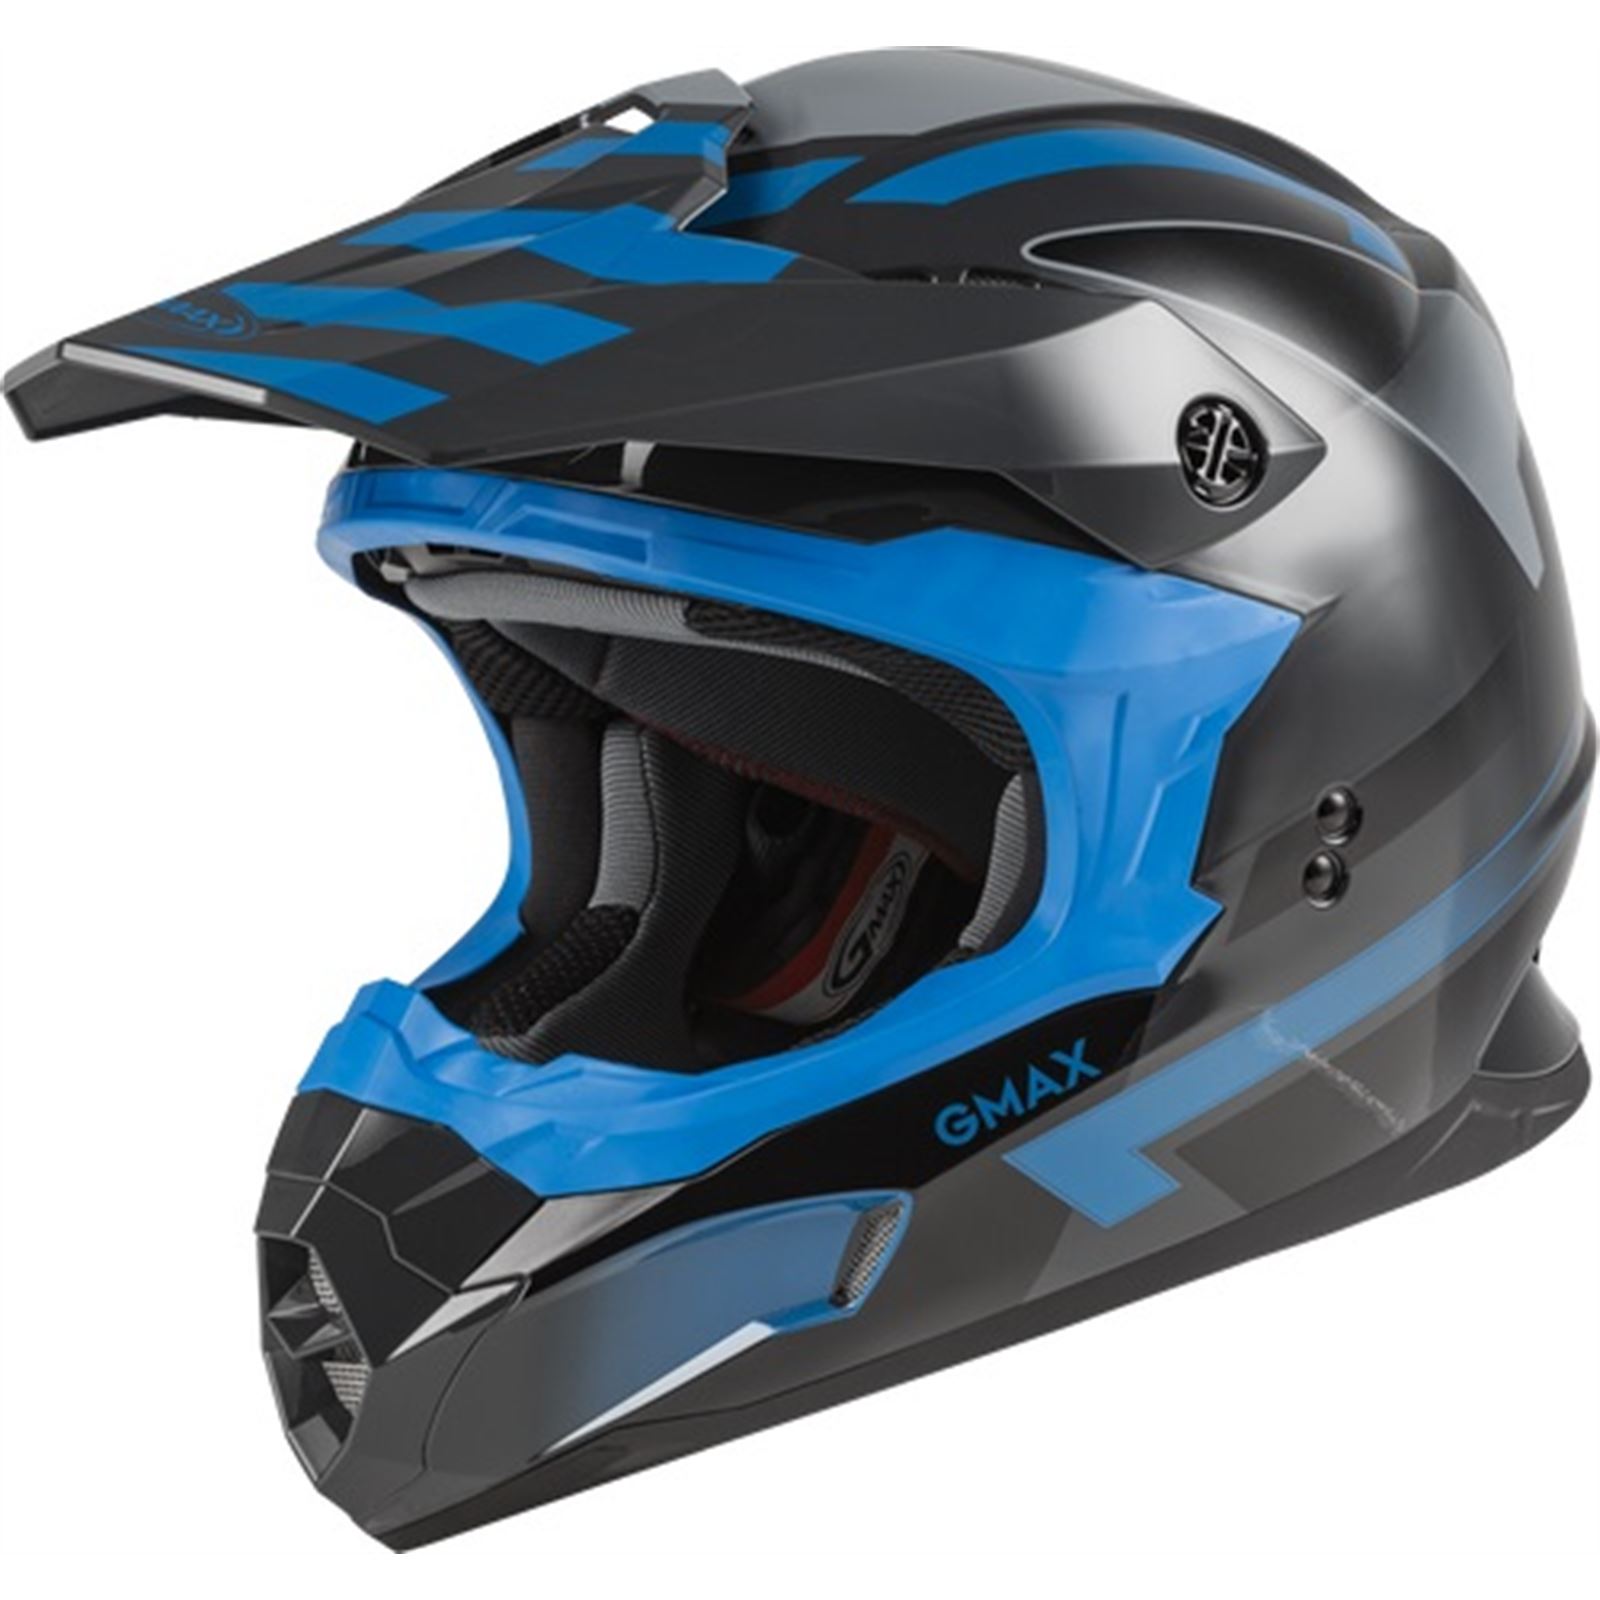 GMax MX-86 Off-Road Fame Helmet - Dark Grey/Blue/Black - Small